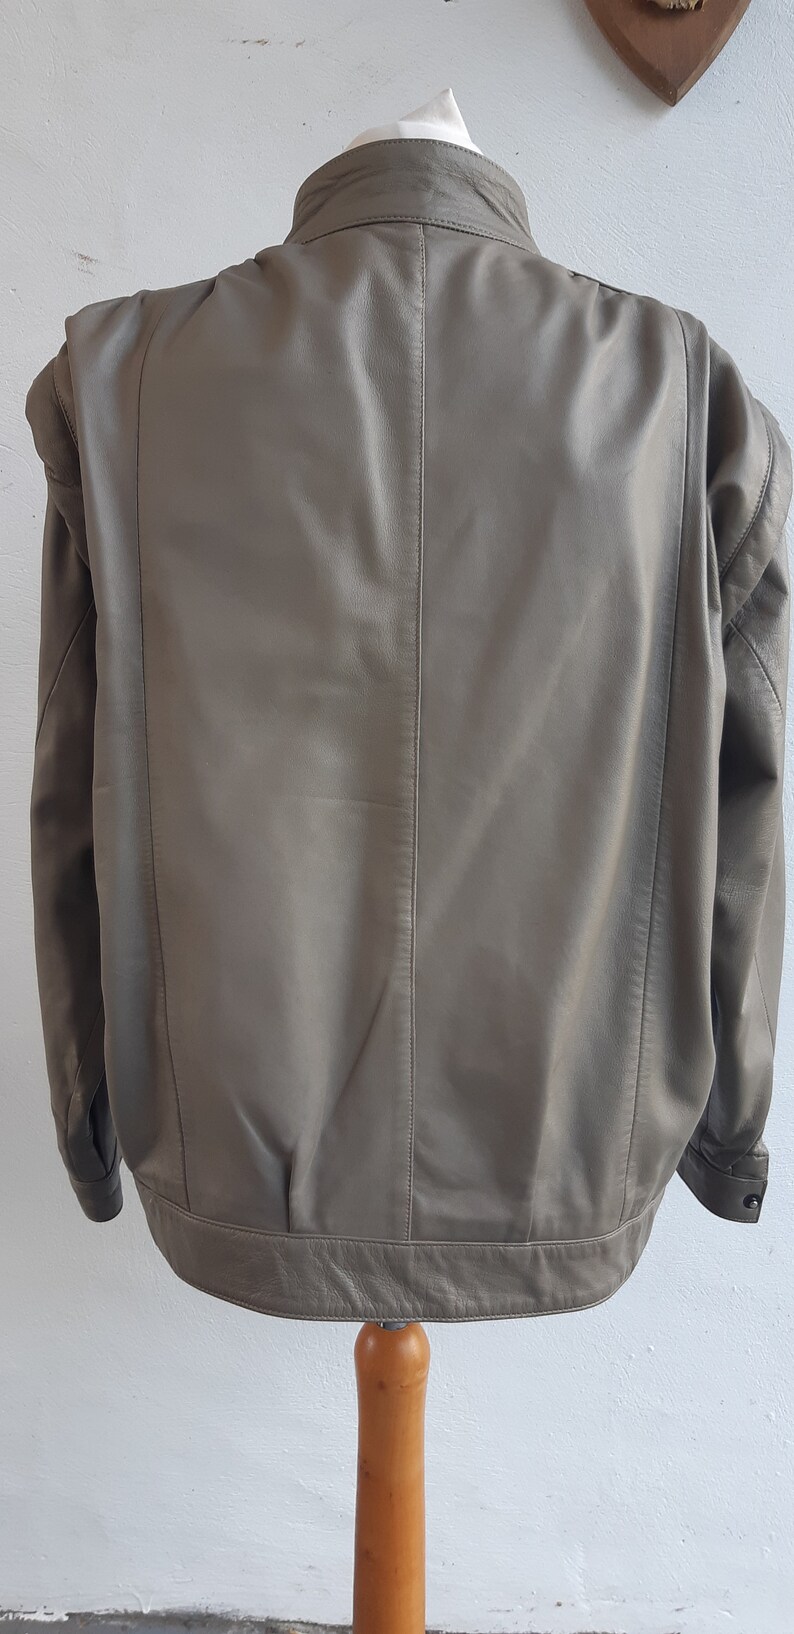 Vintage Leather Jacket 80s Taupe Leather Jacket Size Medium - Etsy UK